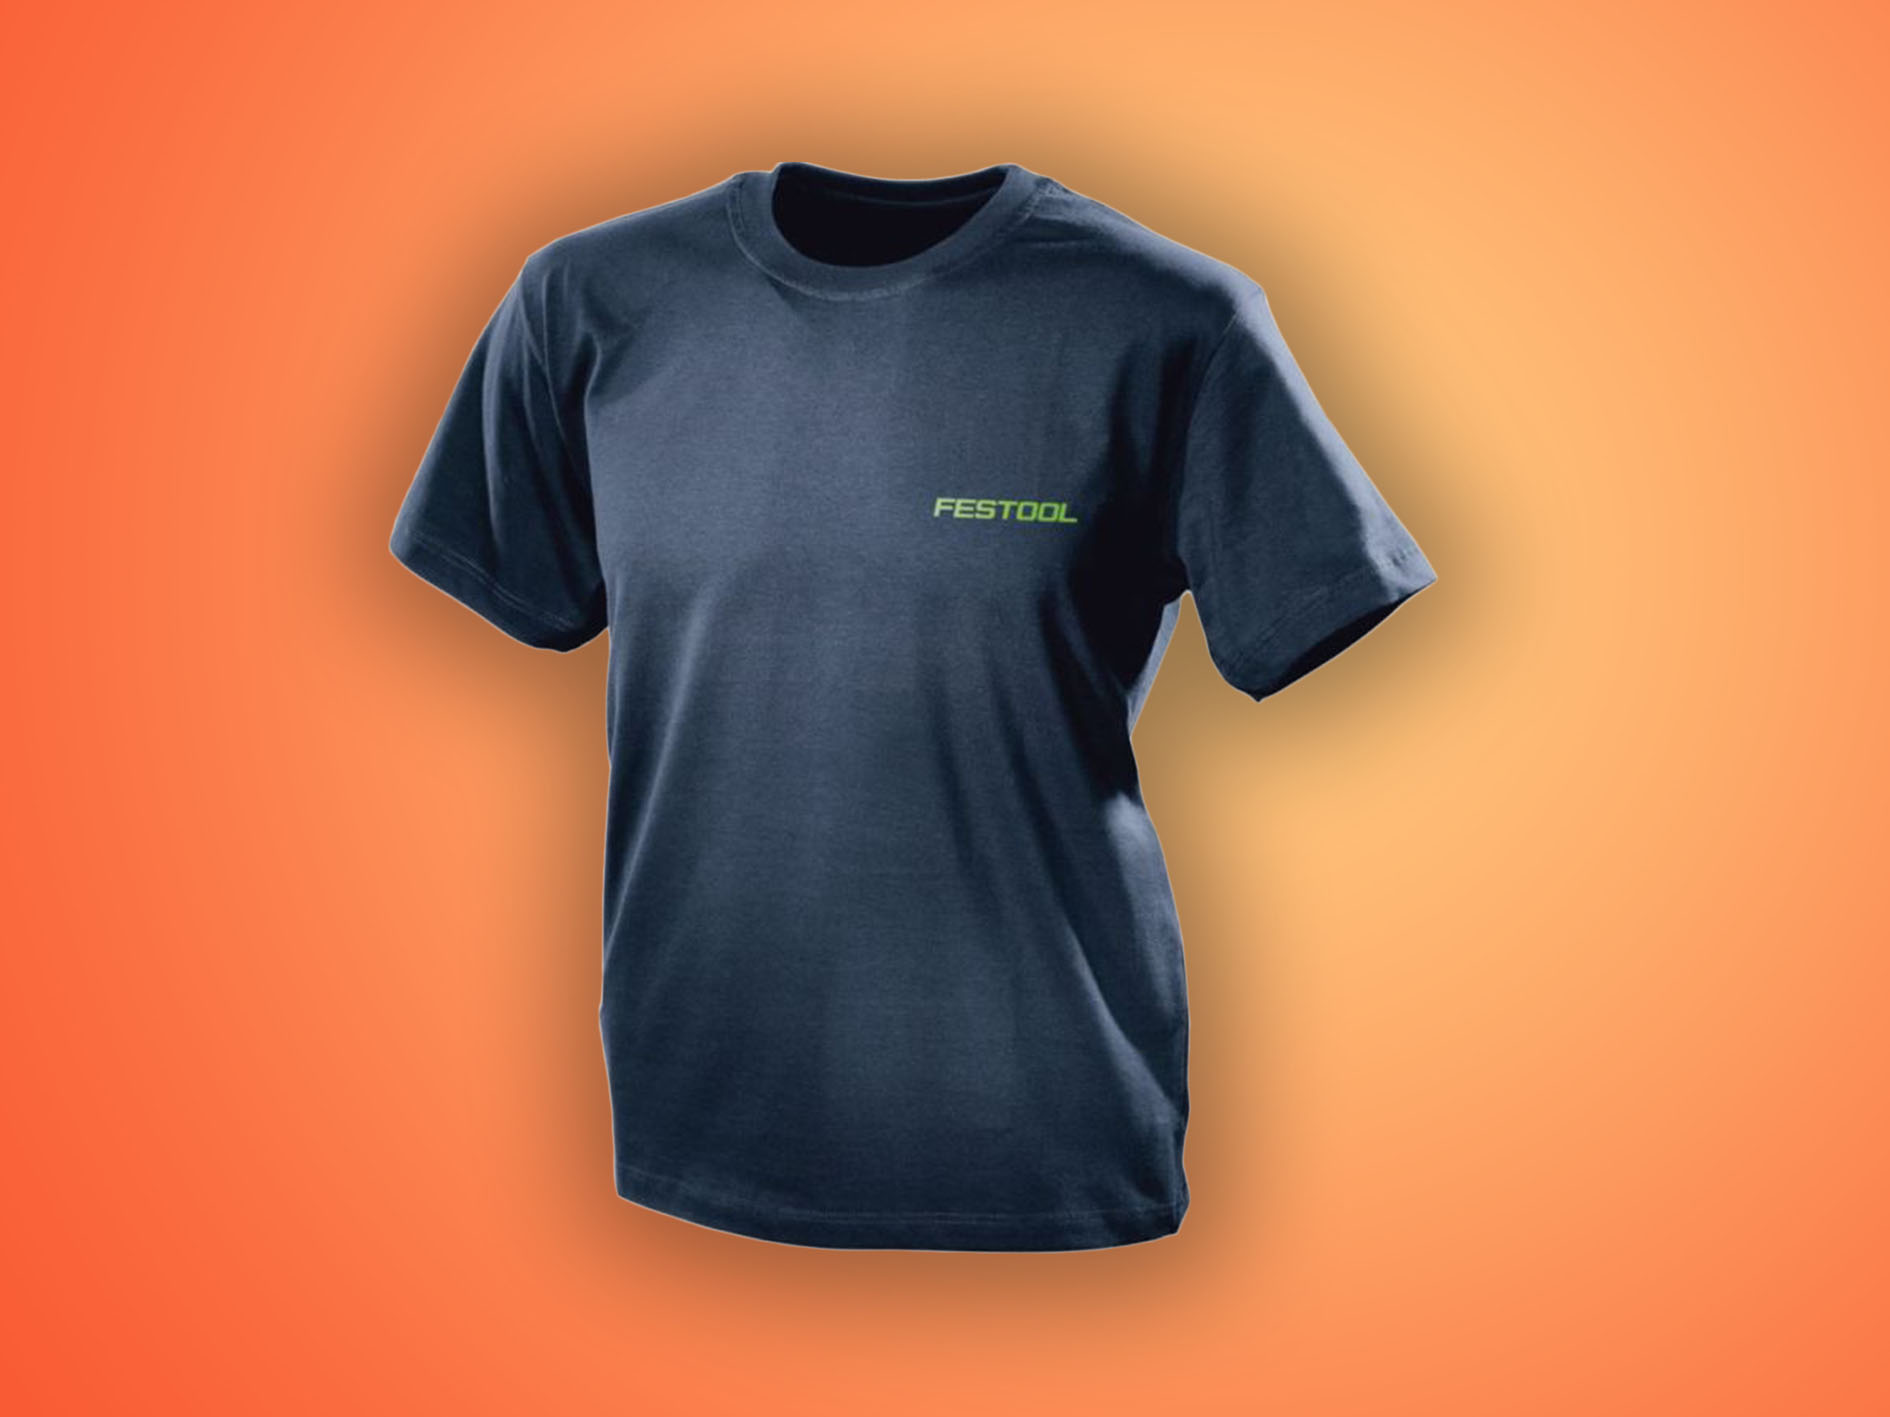 Festool T-Shirt Rundhals SH-FT2 XXL: Ein leichtes Unisex-T-Shirt